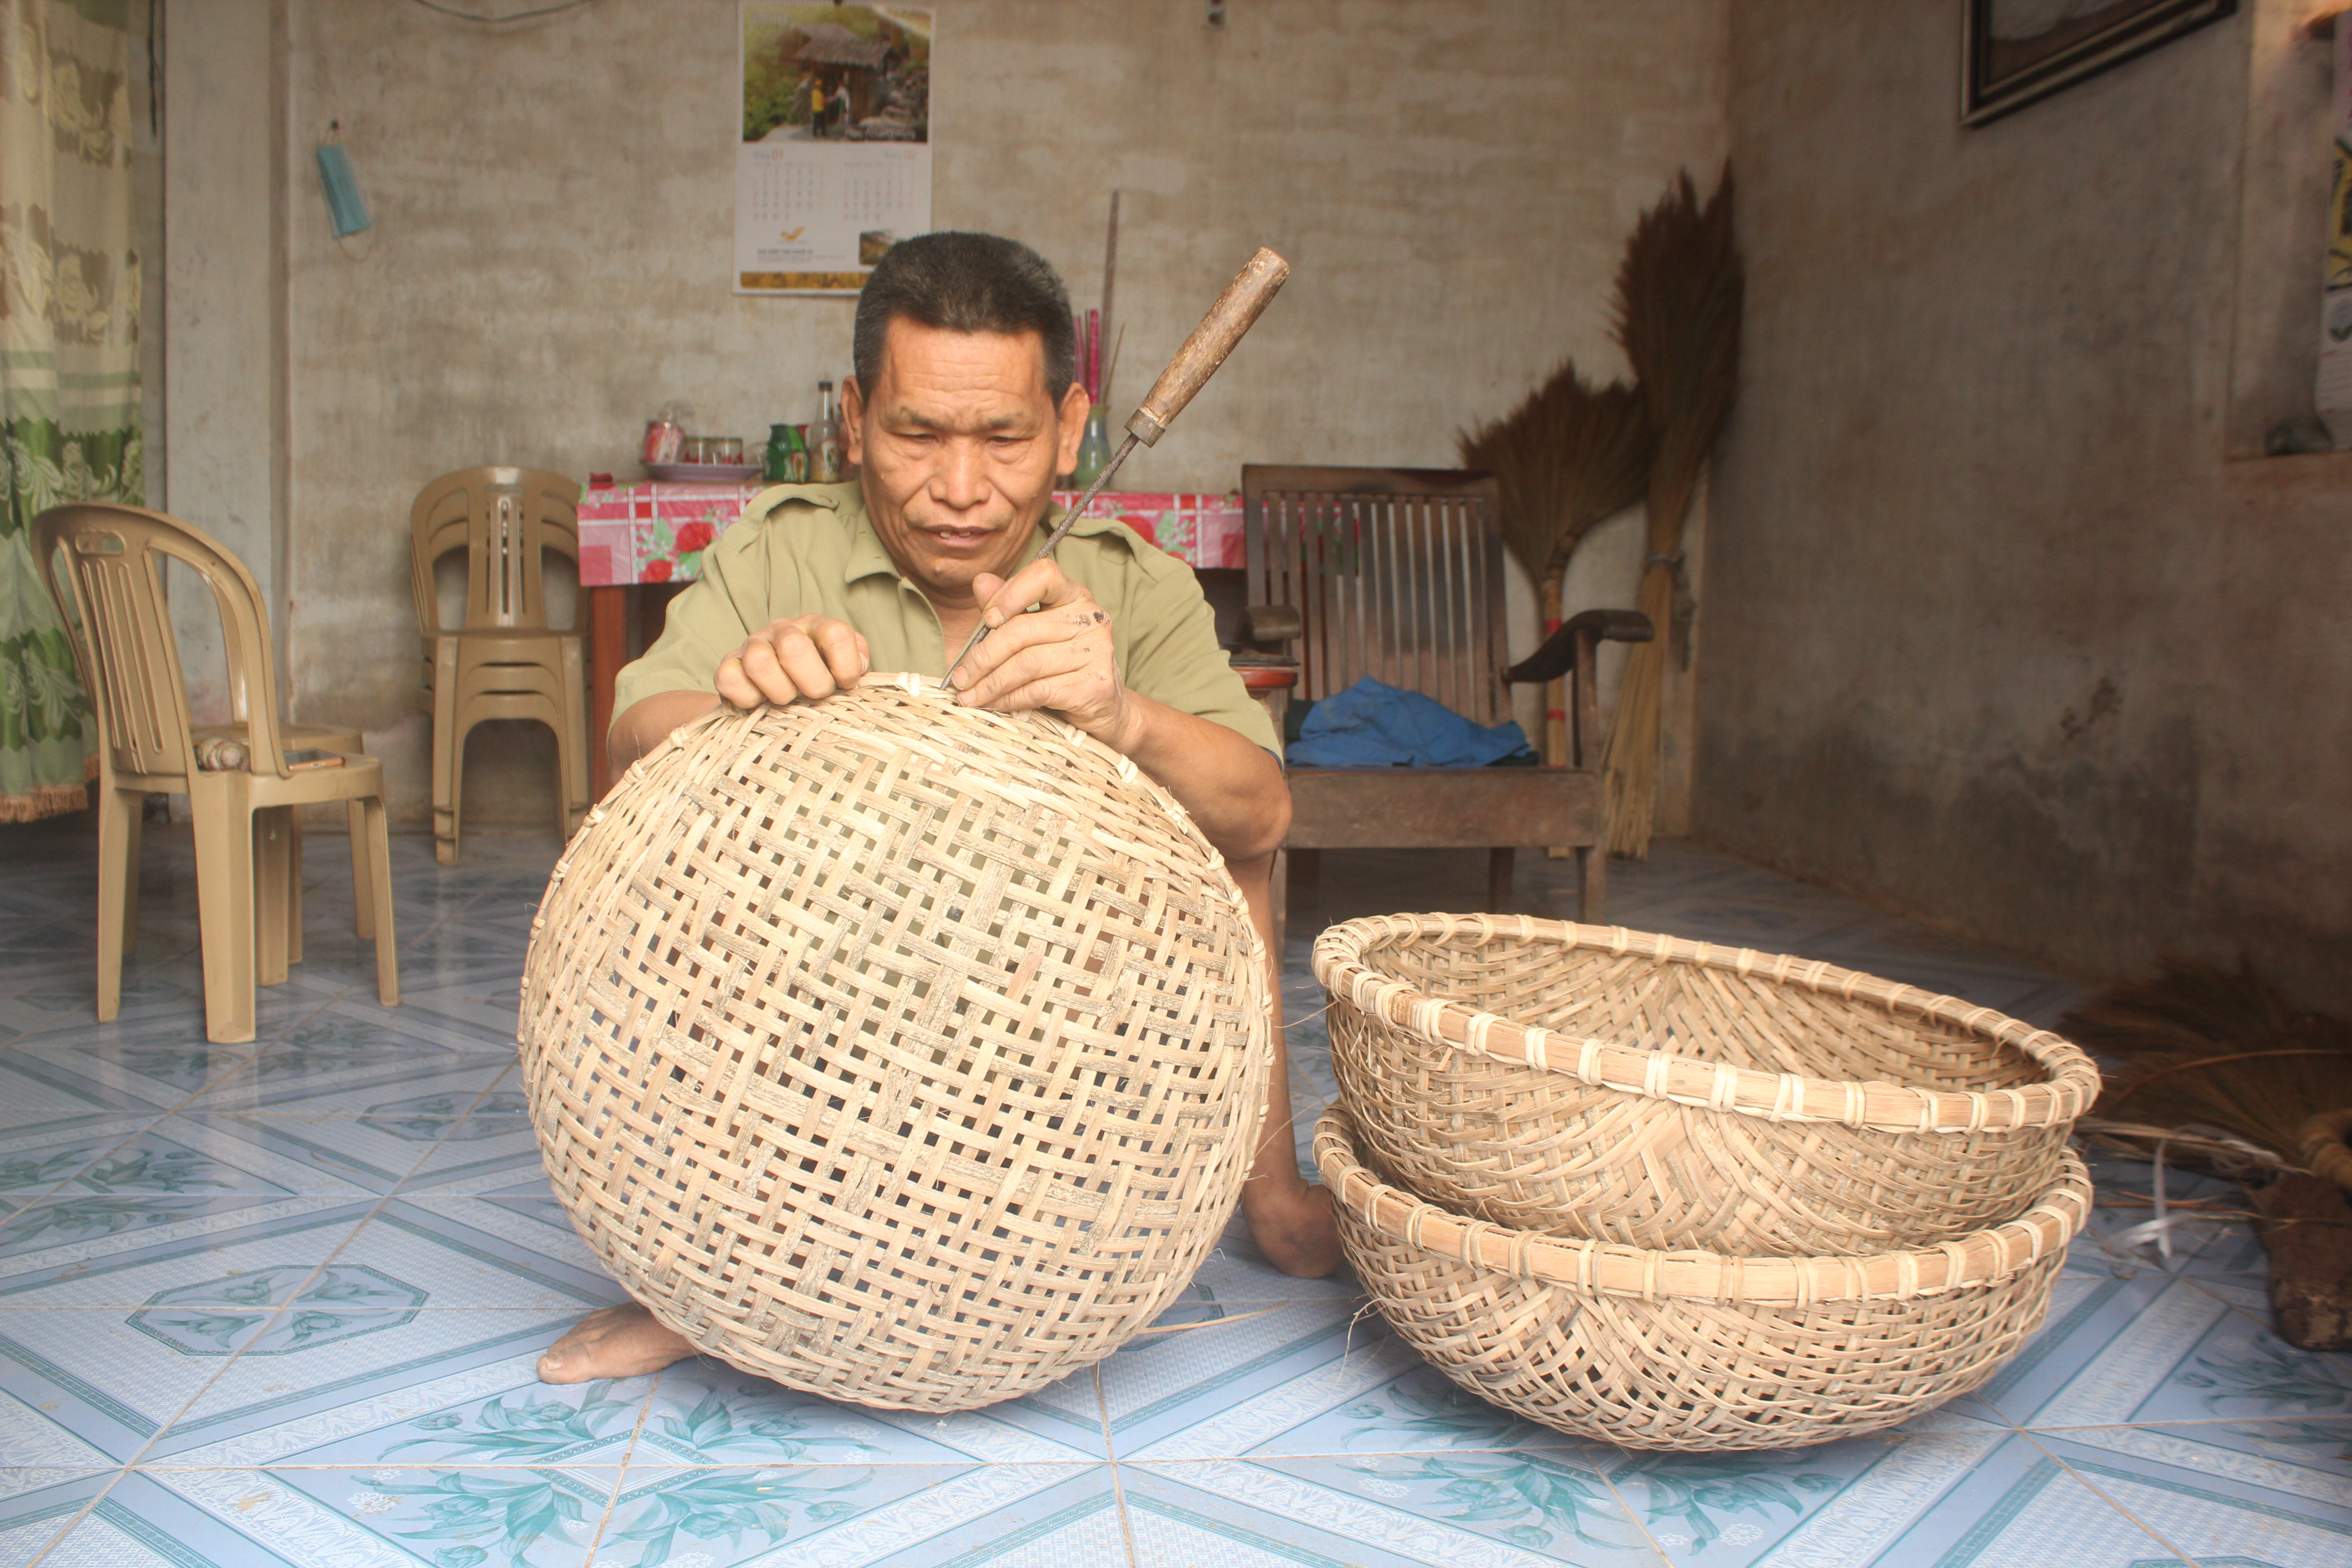 Ông Tân bắt đầu làm quen với nghề đan lát lúc 8 tuổi, nay ông vẫn làm khi khách yêu cầu.